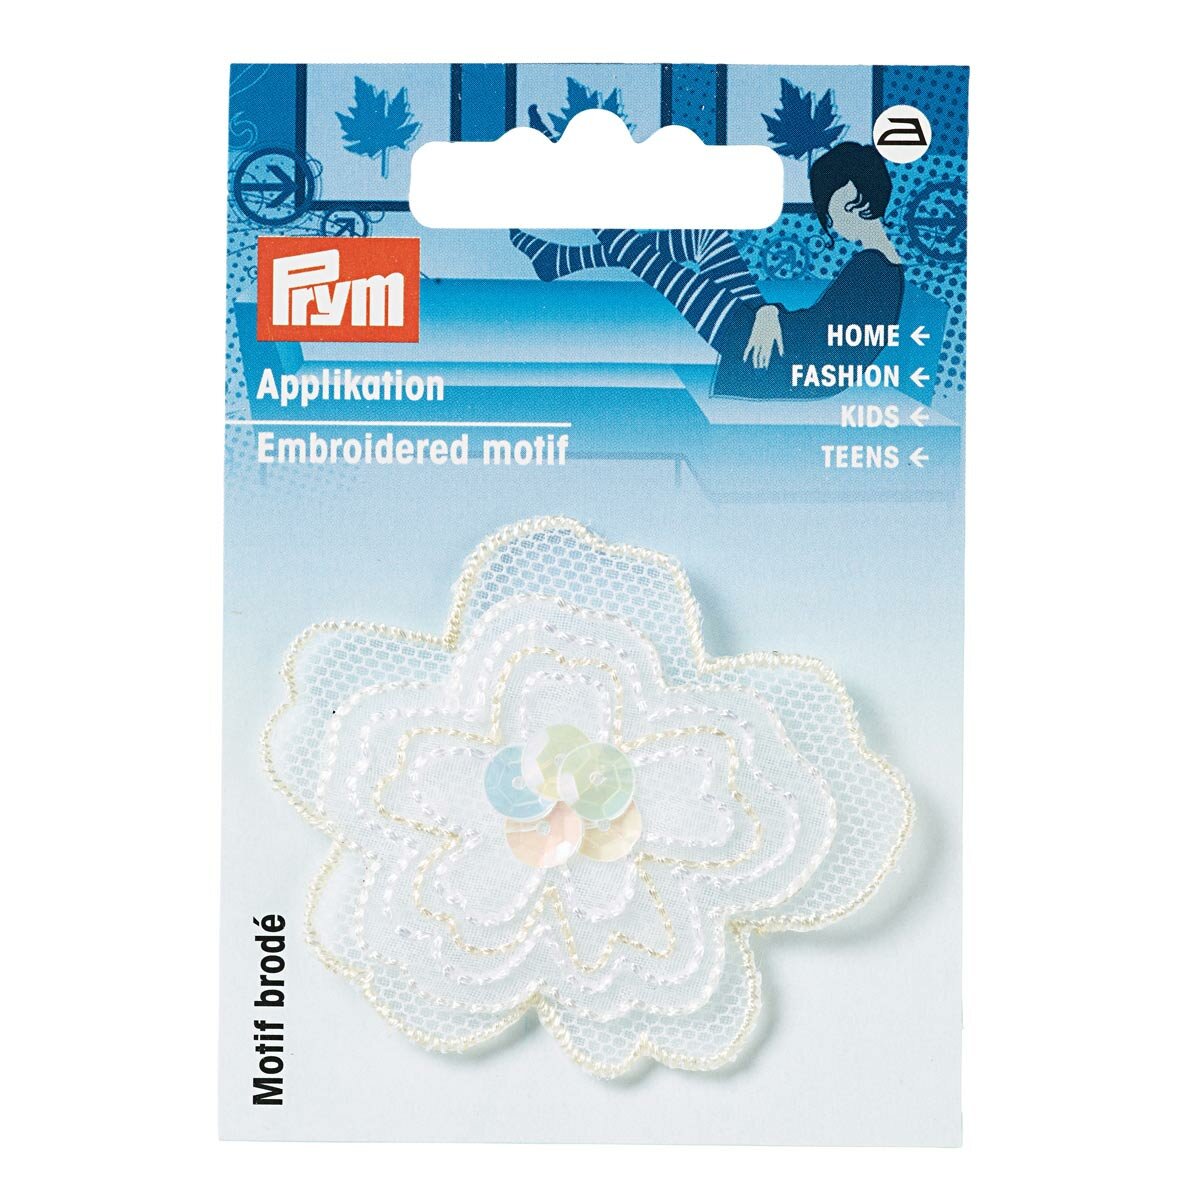 926160 Термоаппликация Prym Цветок с пайетками, органза, белый цвет, 5,6 см, 1шт